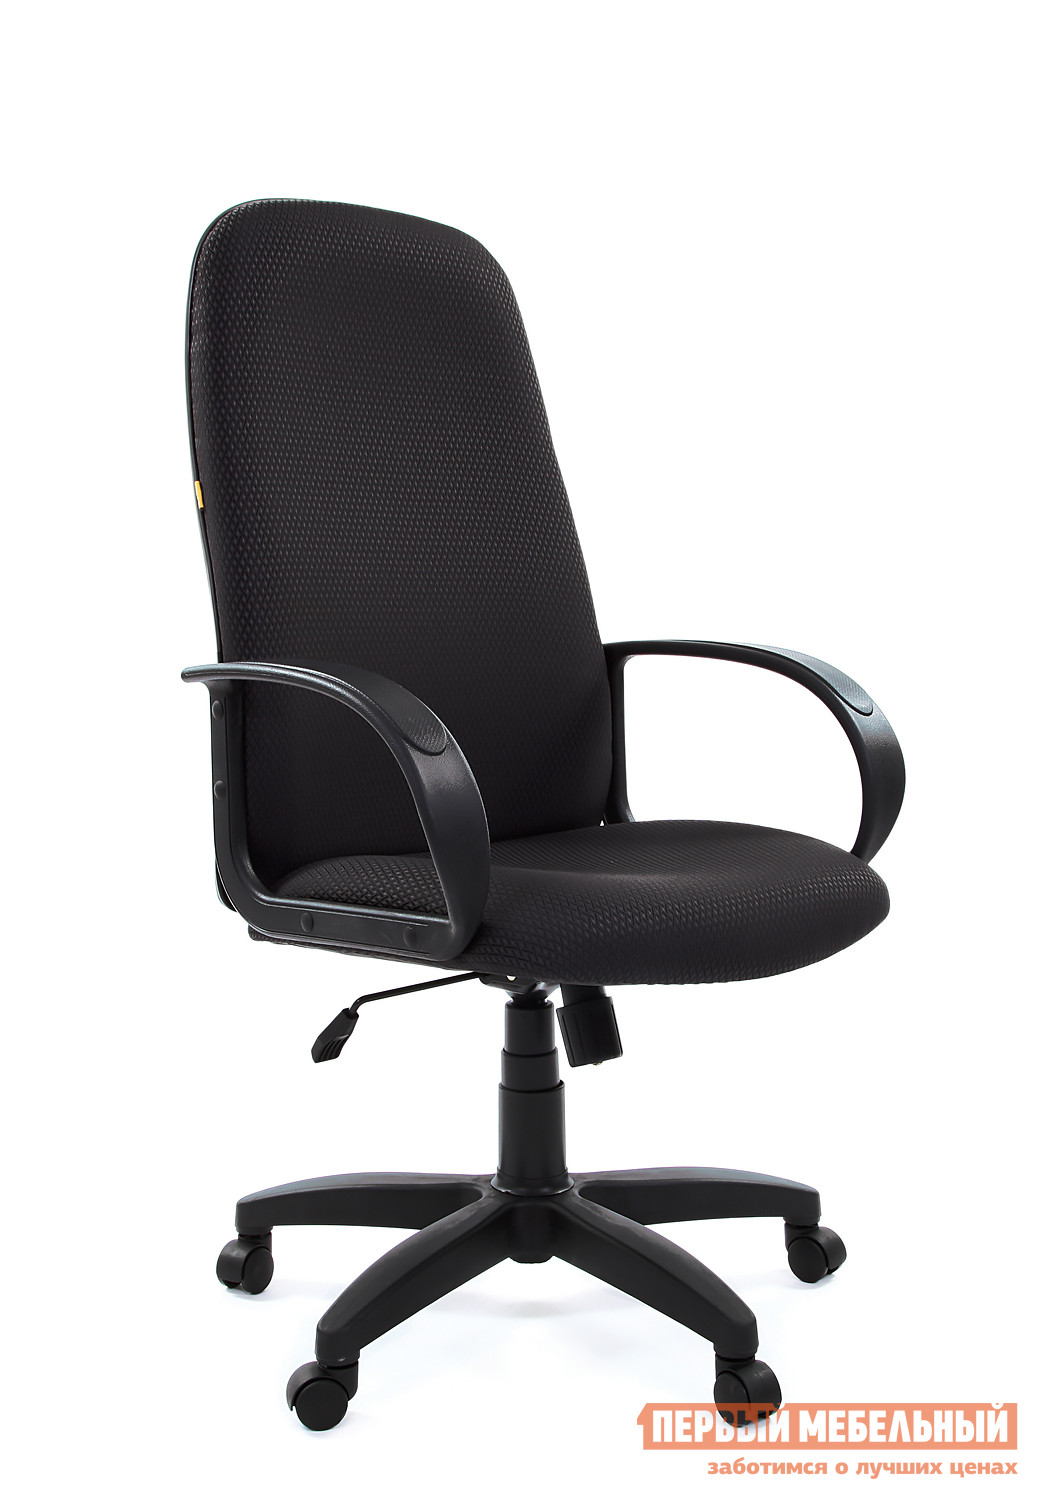 Фото Офисное кресло Chairman BUDGET (E 279) JP 15-2 черный. Купить с доставкой